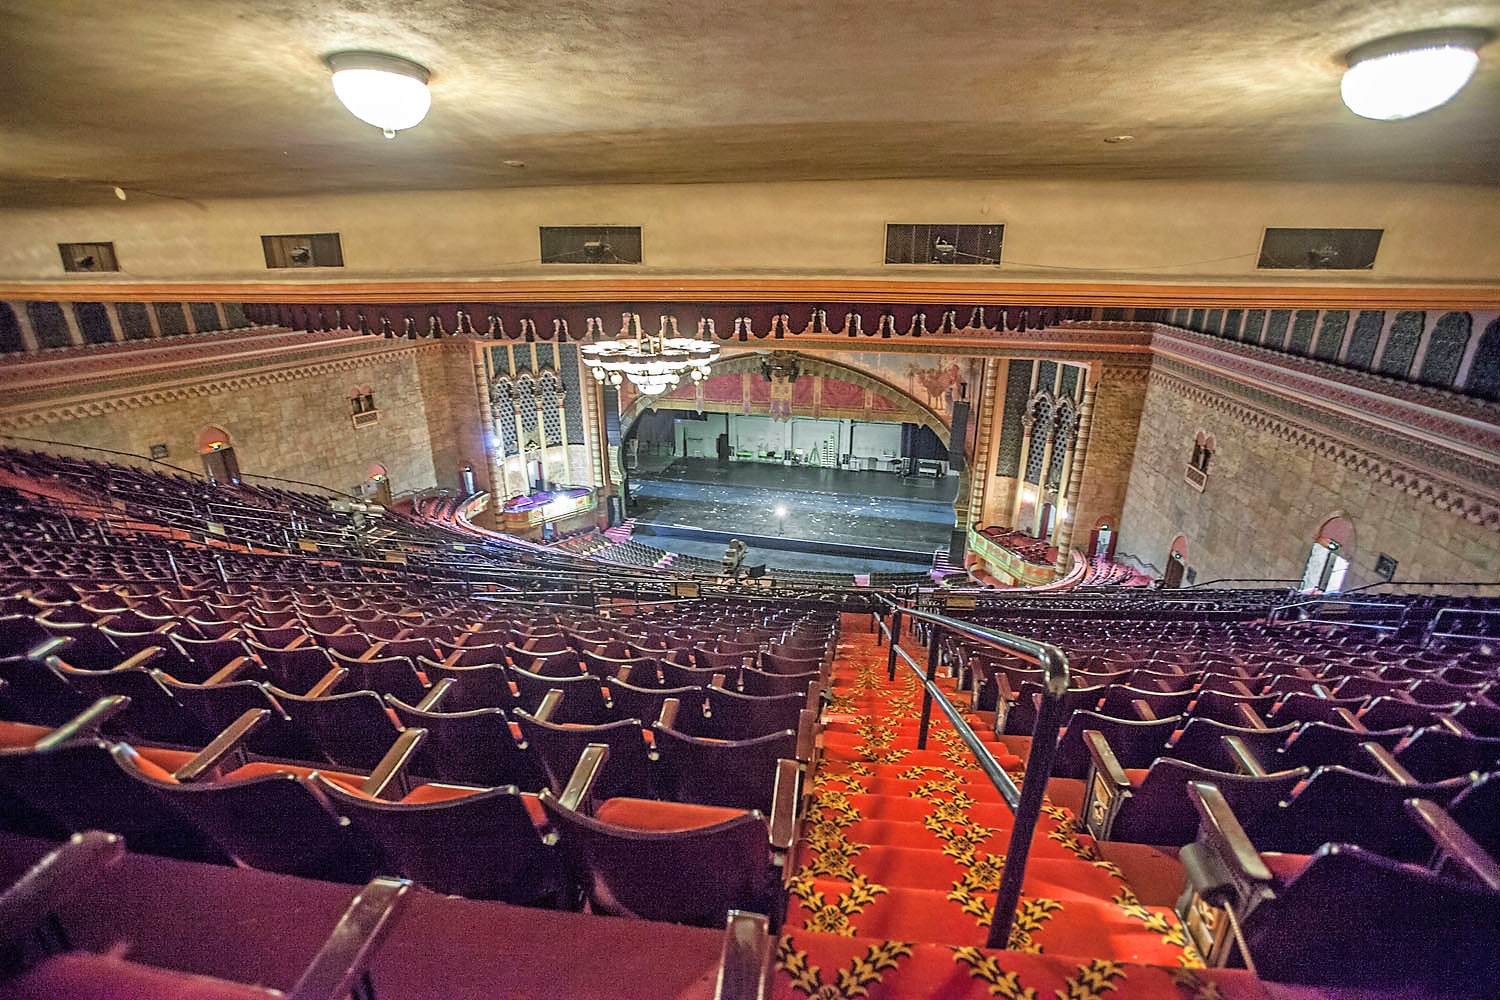 Los Angeles Theatres: Shrine Auditorium: the auditorium